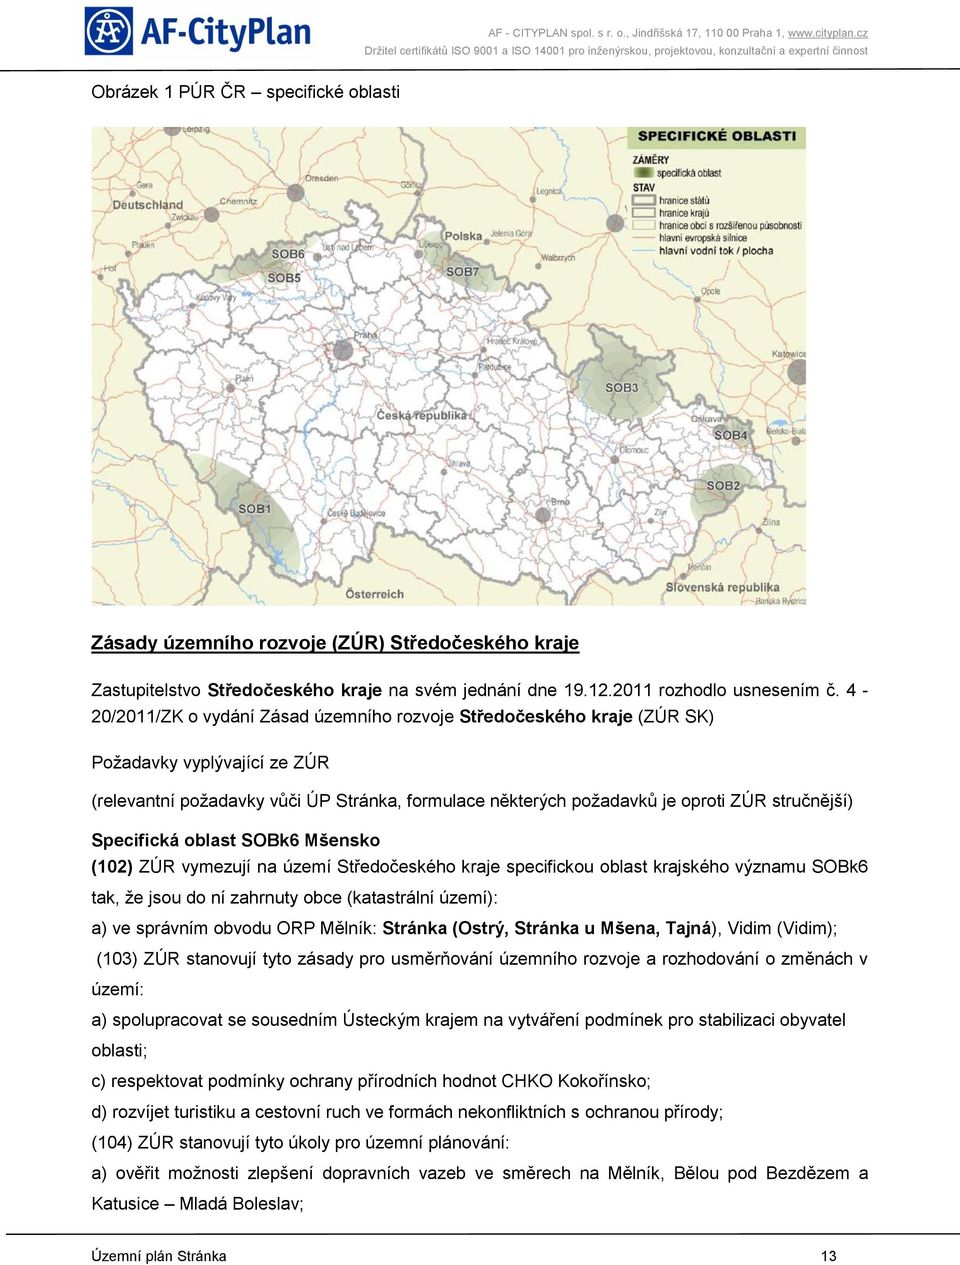 Specifická oblast SOBk6 Mšensko (102) ZÚR vymezují na území Středočeského kraje specifickou oblast krajského významu SOBk6 tak, že jsou do ní zahrnuty obce (katastrální území): a) ve správním obvodu